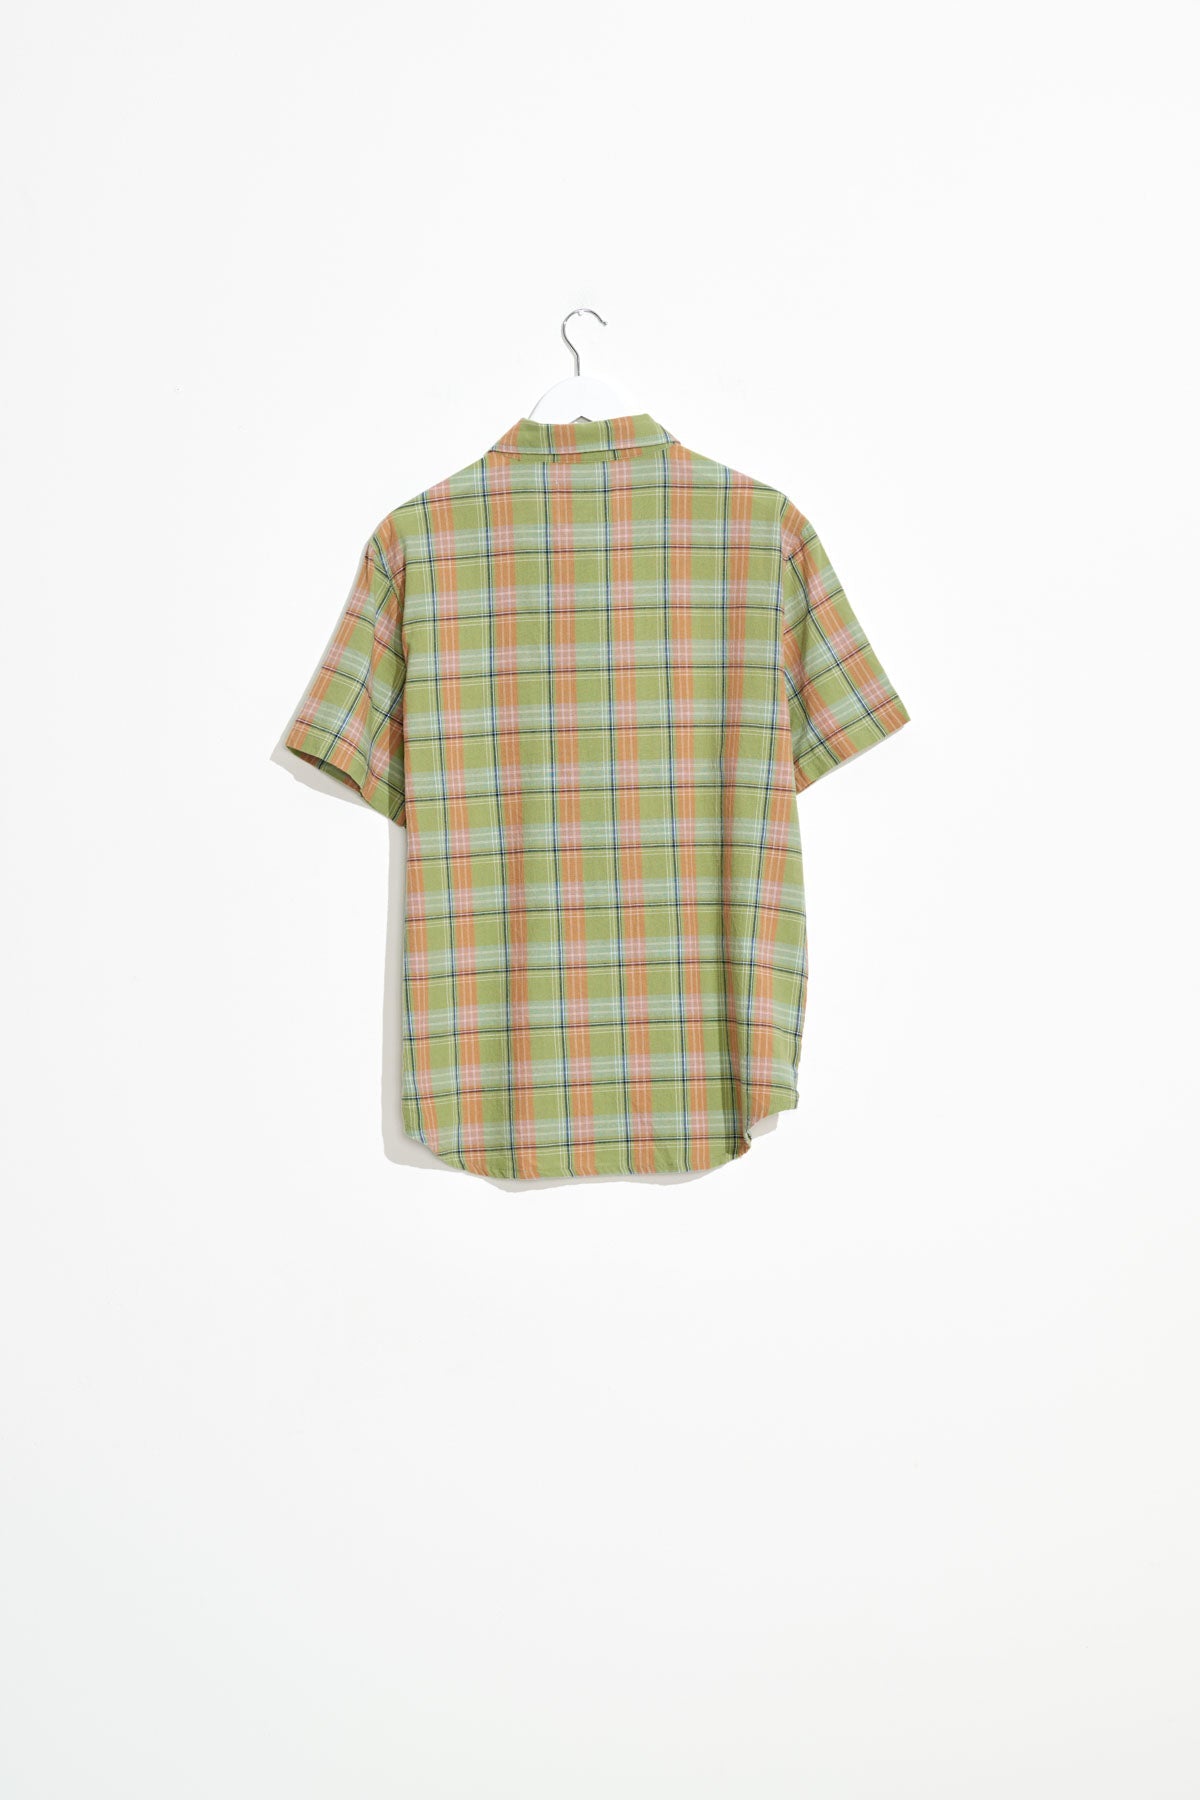 Misfit Shapes - Darling Quartz SS Shirt - Green